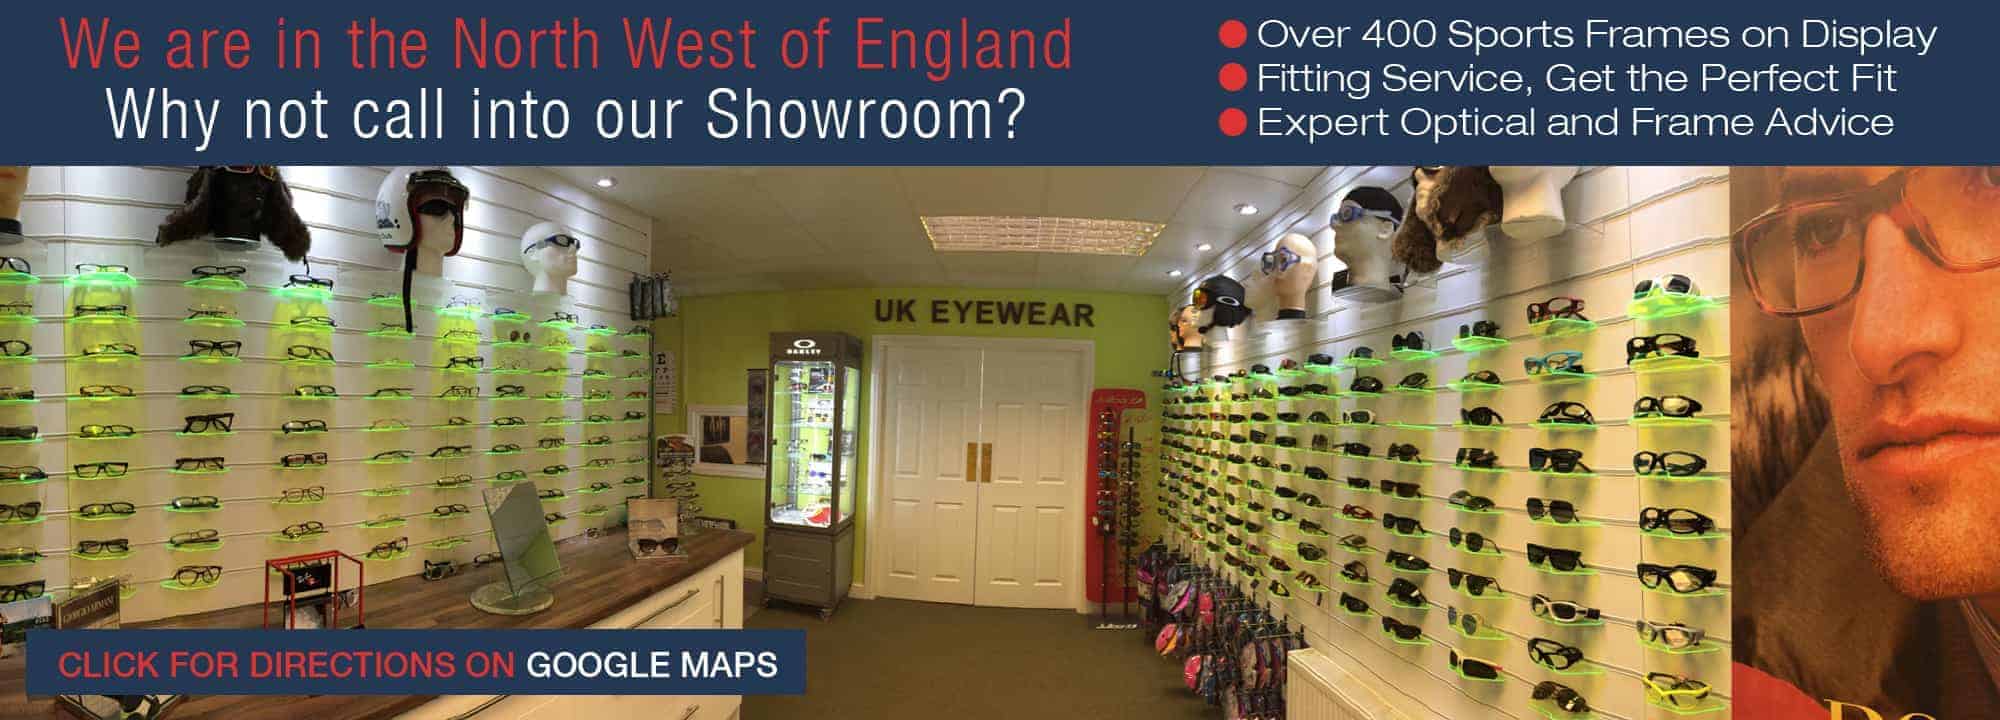 UK Eyewear showroom